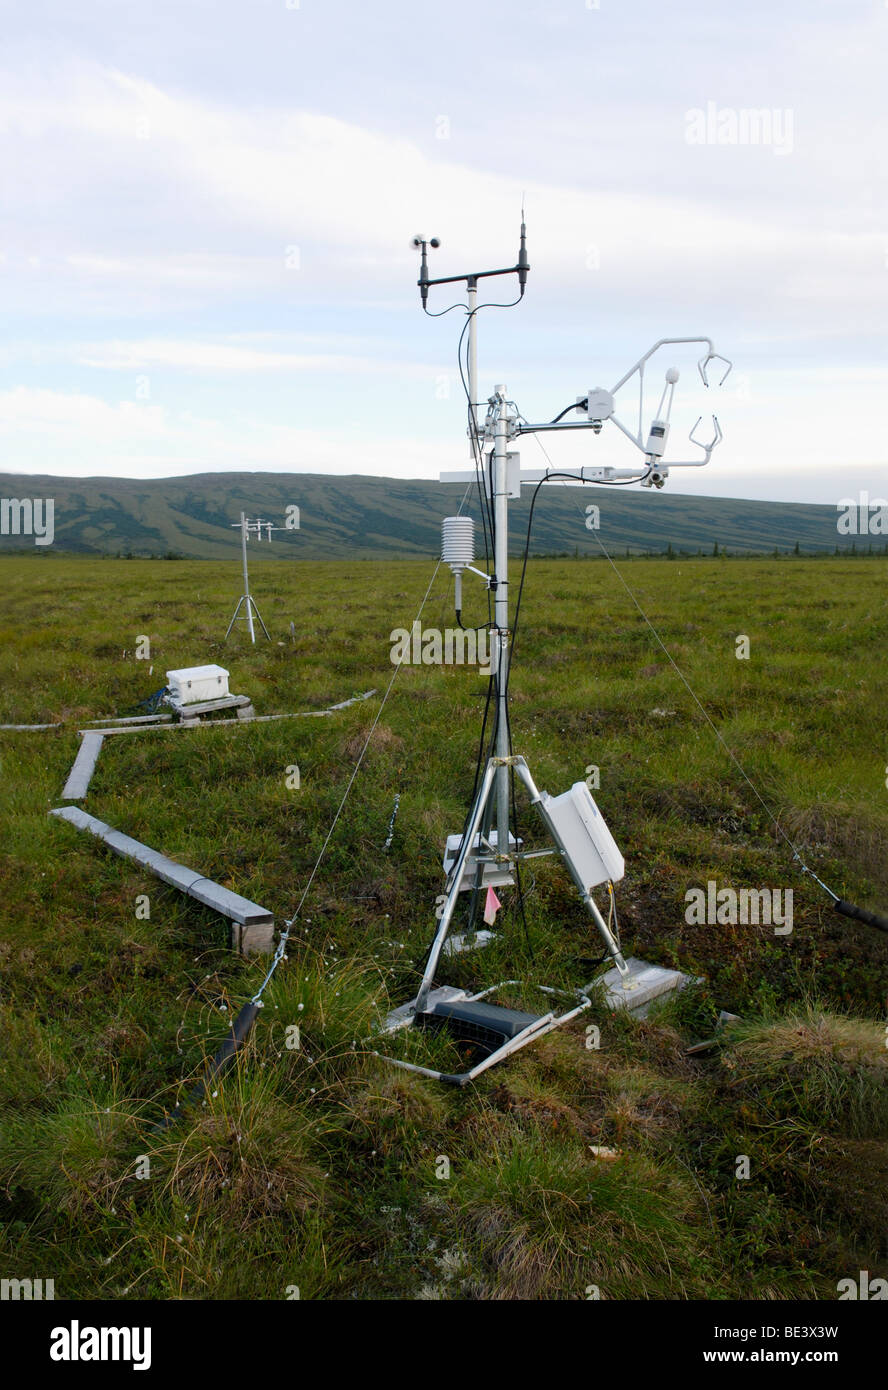 La investigación sobre el cambio climático - un eddy covarianza mide el CO2 sistema de intercambio entre el derretimiento de permafrost de Alaska y de la atmósfera. Foto de stock